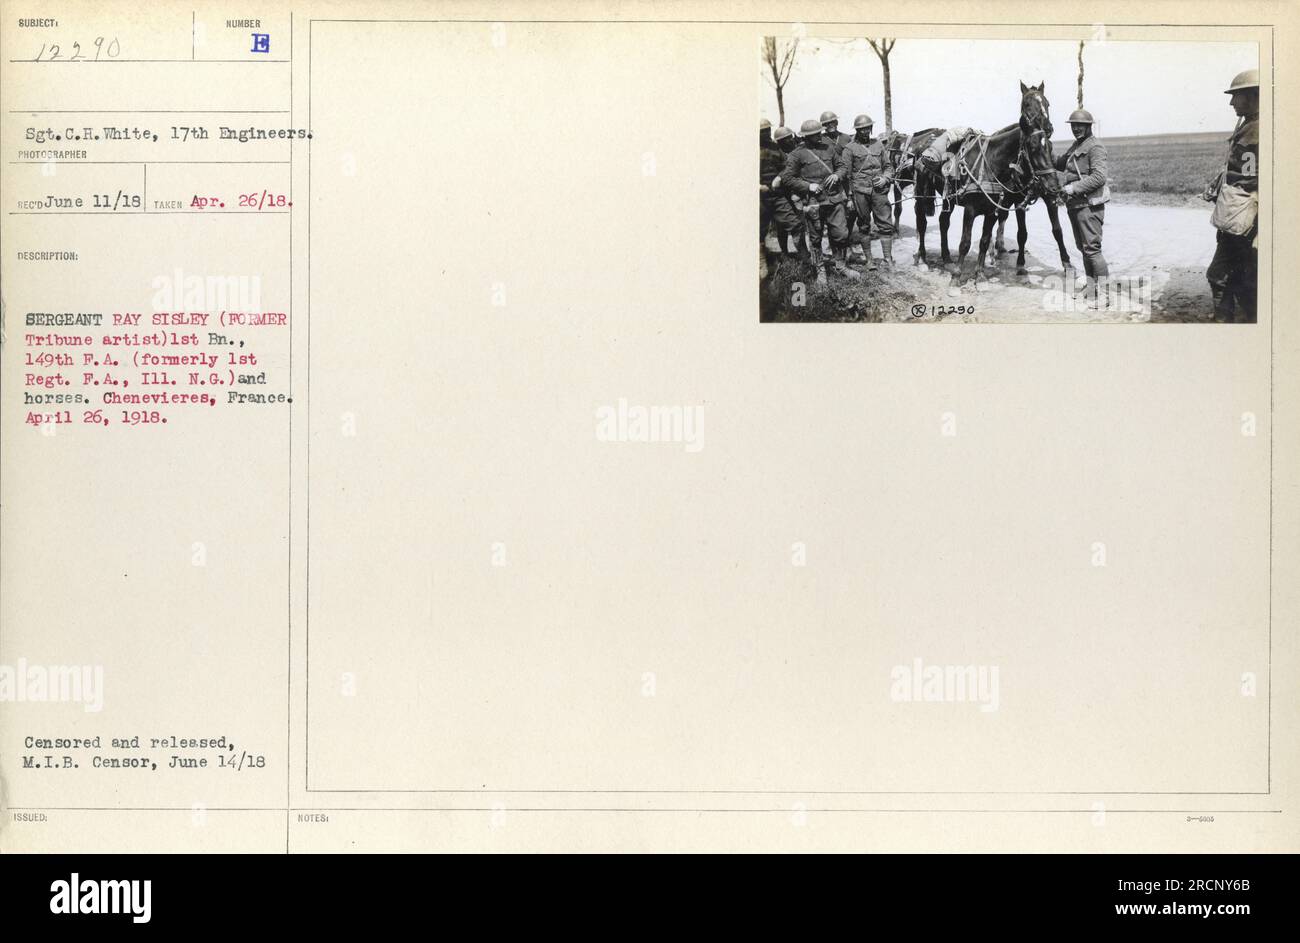 Sgt. C.H. Weiß von den 17. Ingenieuren, abgebildet mit E Sergeant Ray Sisley und Pferden. Dieses Foto wurde am 26. April 1918 in Chenevieres, Frankreich, aufgenommen. Es wurde vom M.I.B. freigesetzt Zensor am 14. Juni 1918. Dieses Bild stammt aus der Sammlung von Fotografien amerikanischer Militäraktivitäten während des Ersten Weltkriegs. Stockfoto